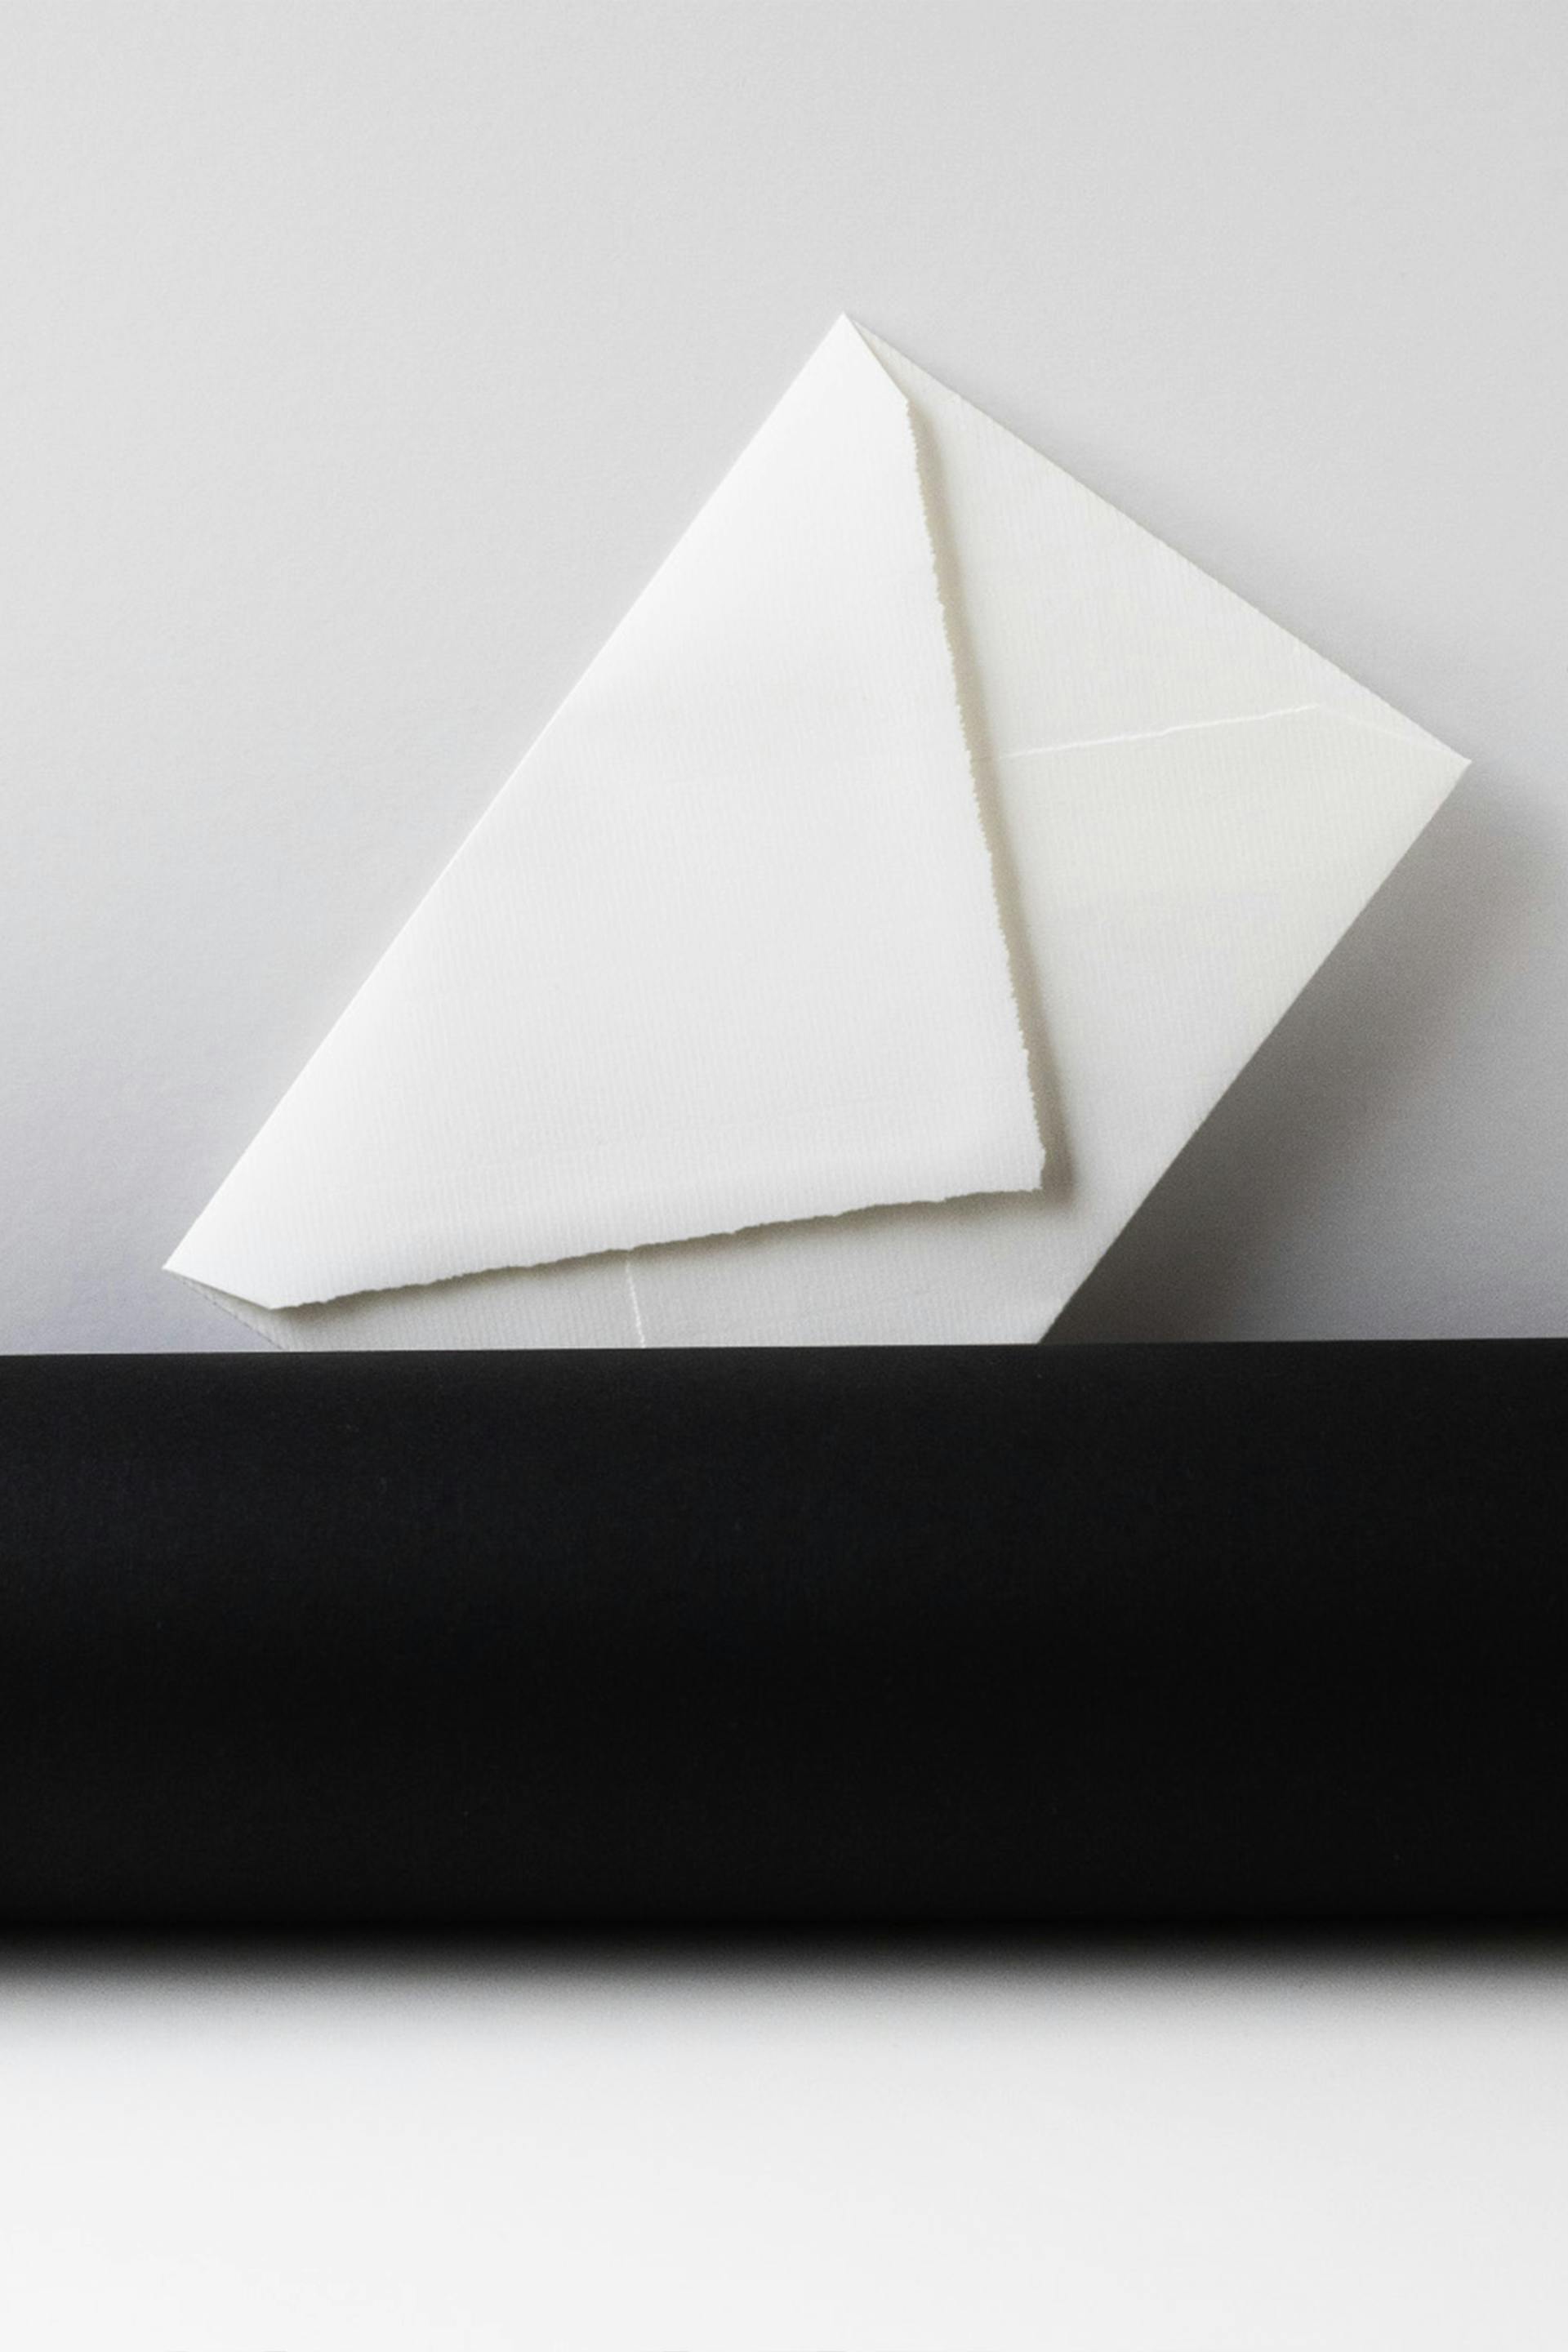 Une enveloppe blanche | Source : Pexels